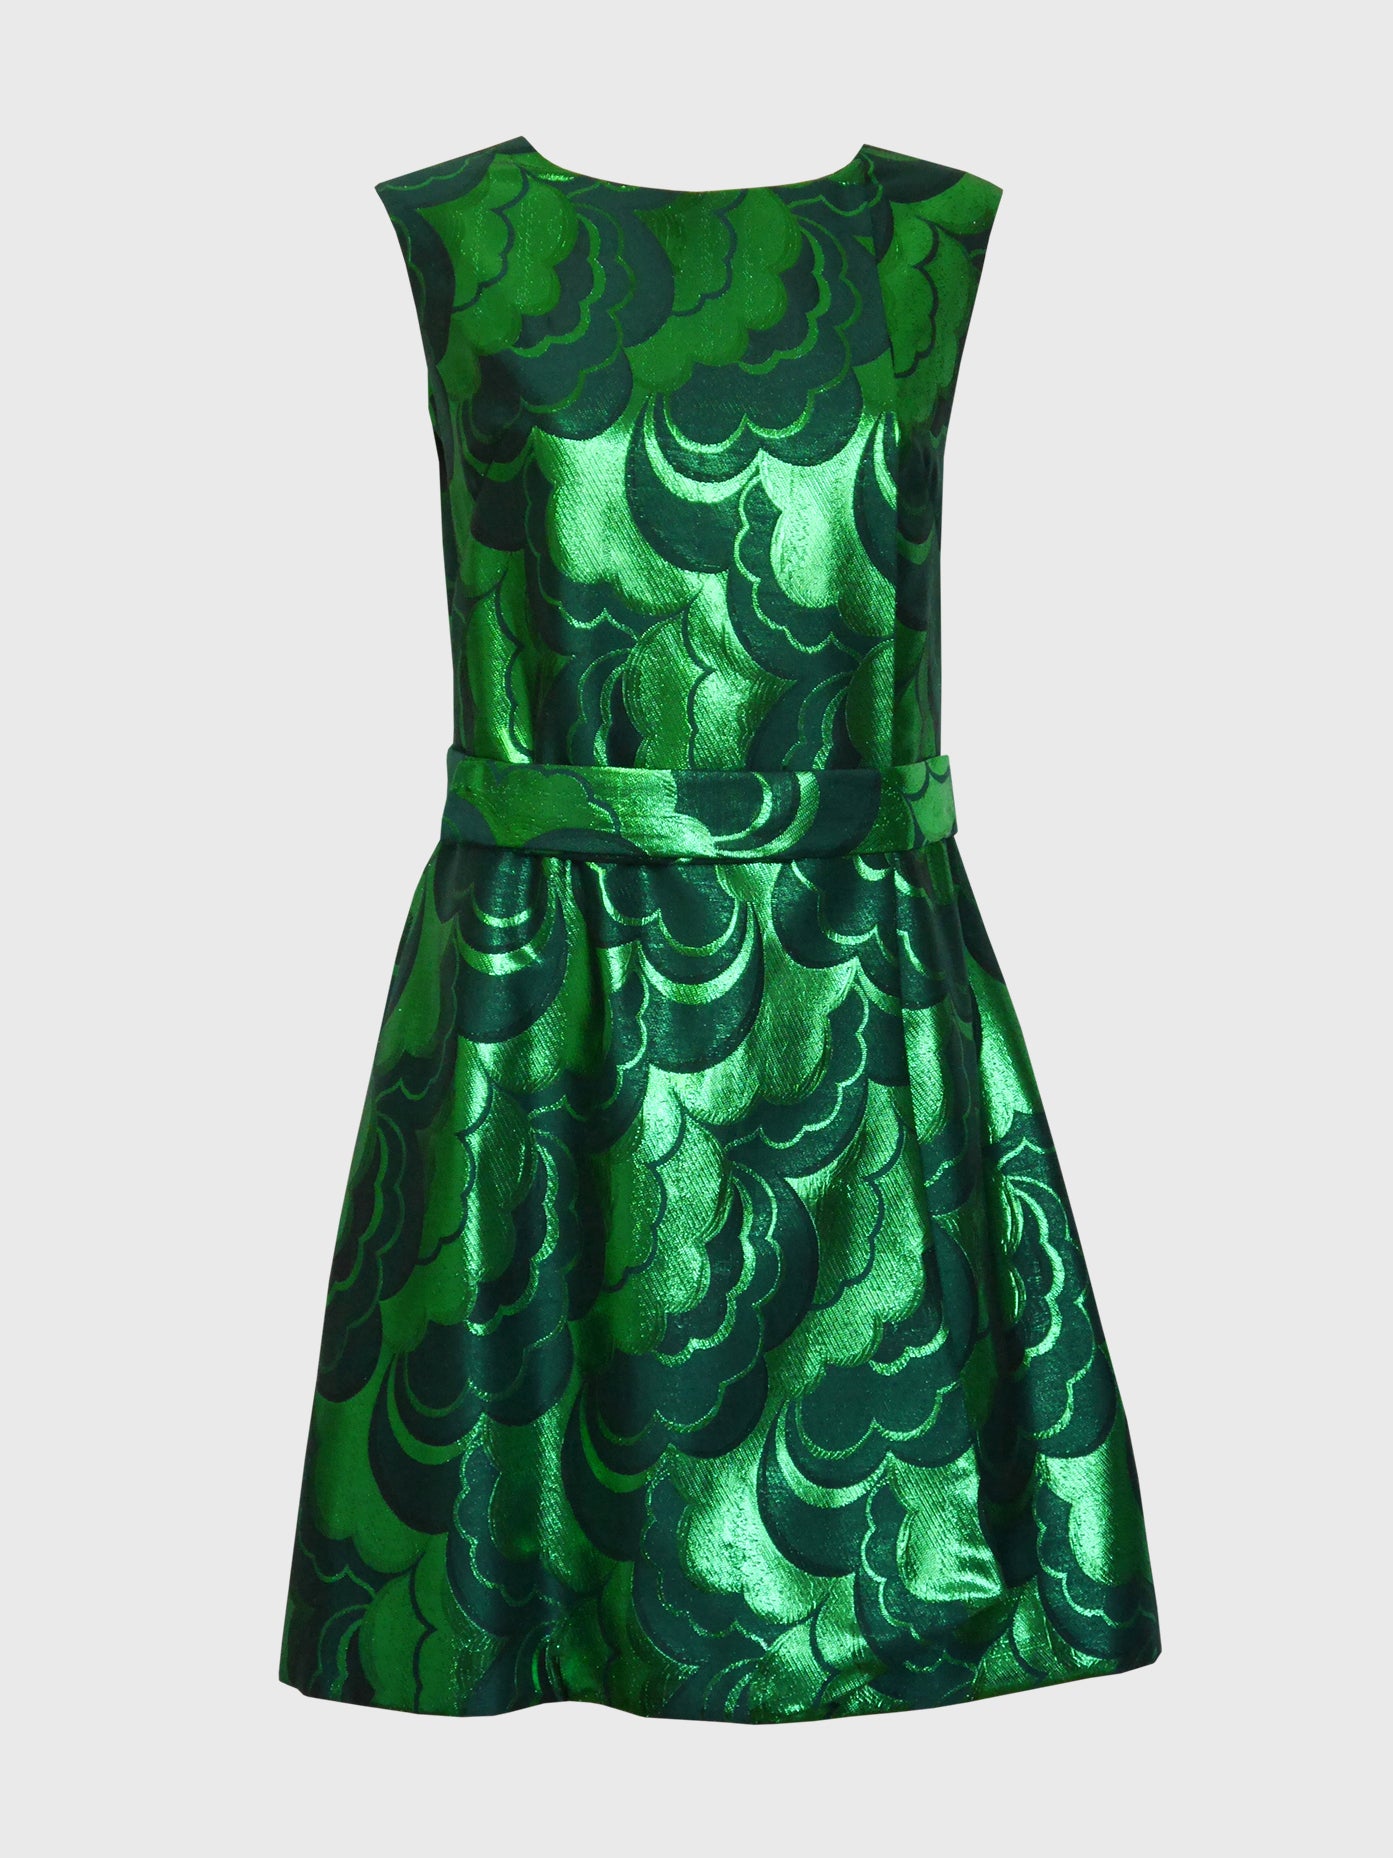 EMILIO SCHUBERTH 1960s Vintage Poison Green Brocade Evening Party Dress